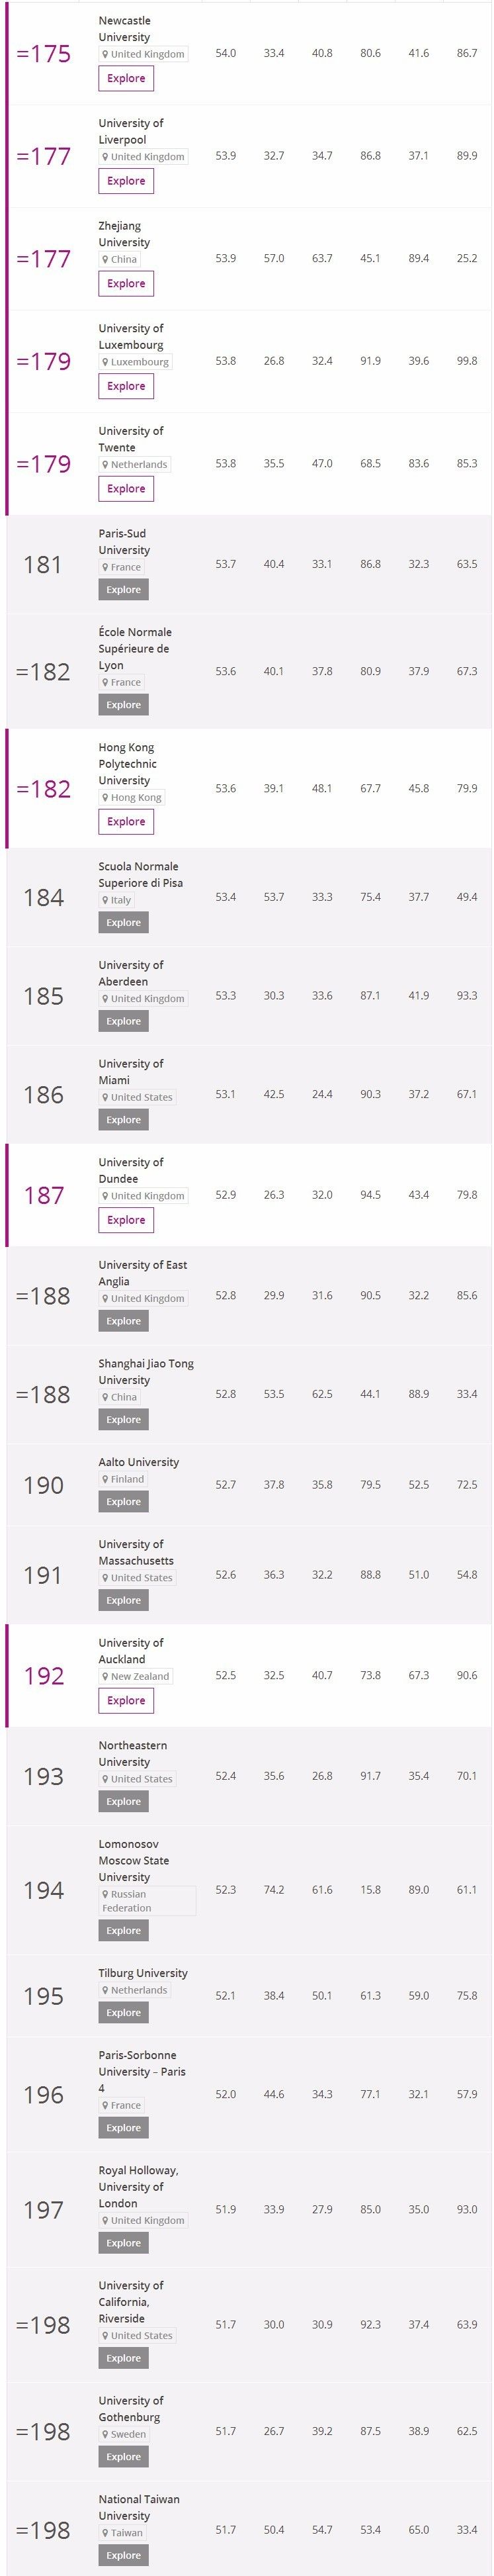 2018年TIMES高等教育世界大学排名出炉